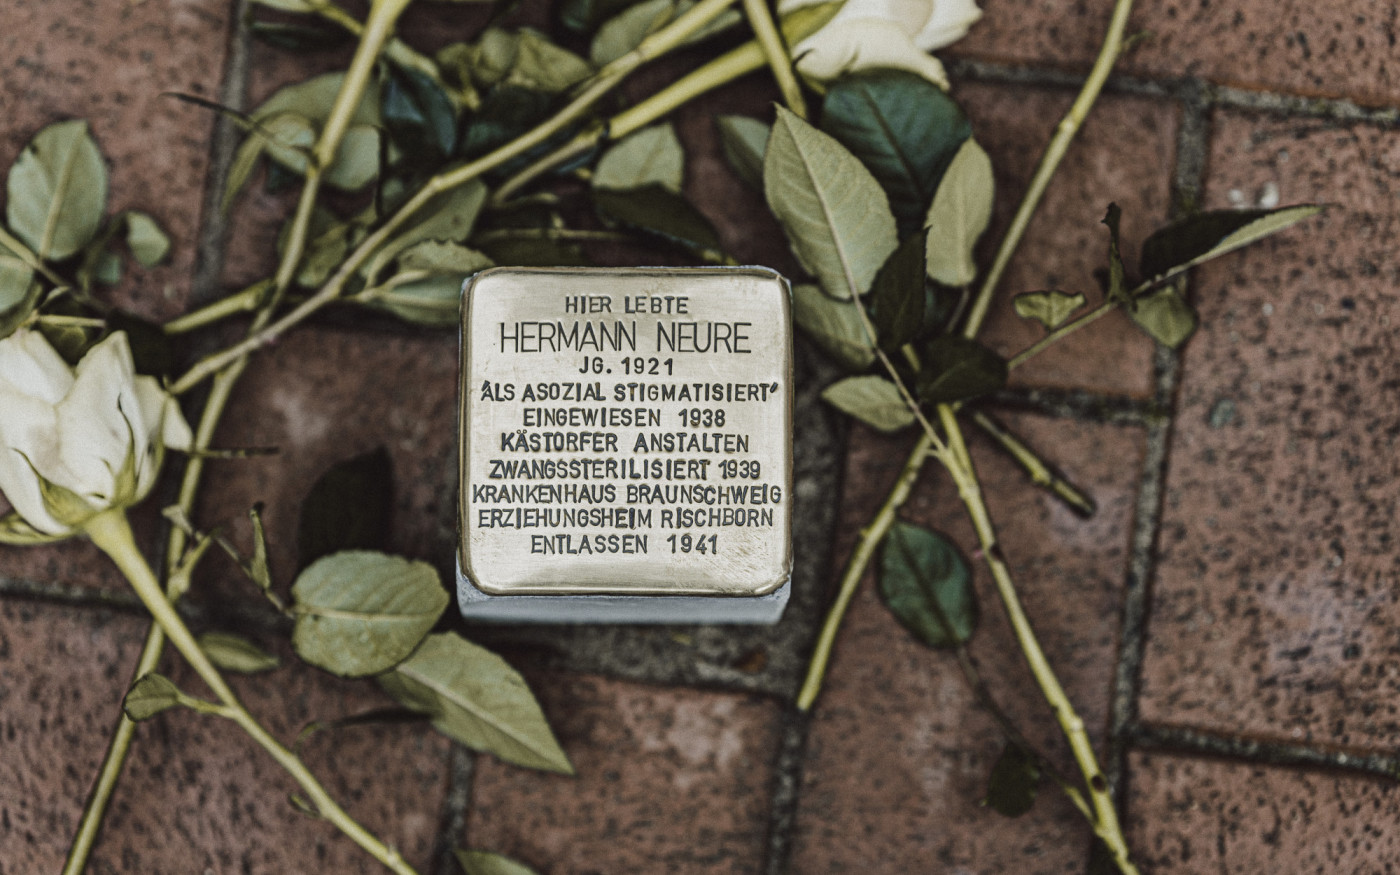 Zwangssterilisiert, aber gut genug für den Krieg: Hermann Neure wurde von den Nazis erst gepeinigt, dann eingezogen